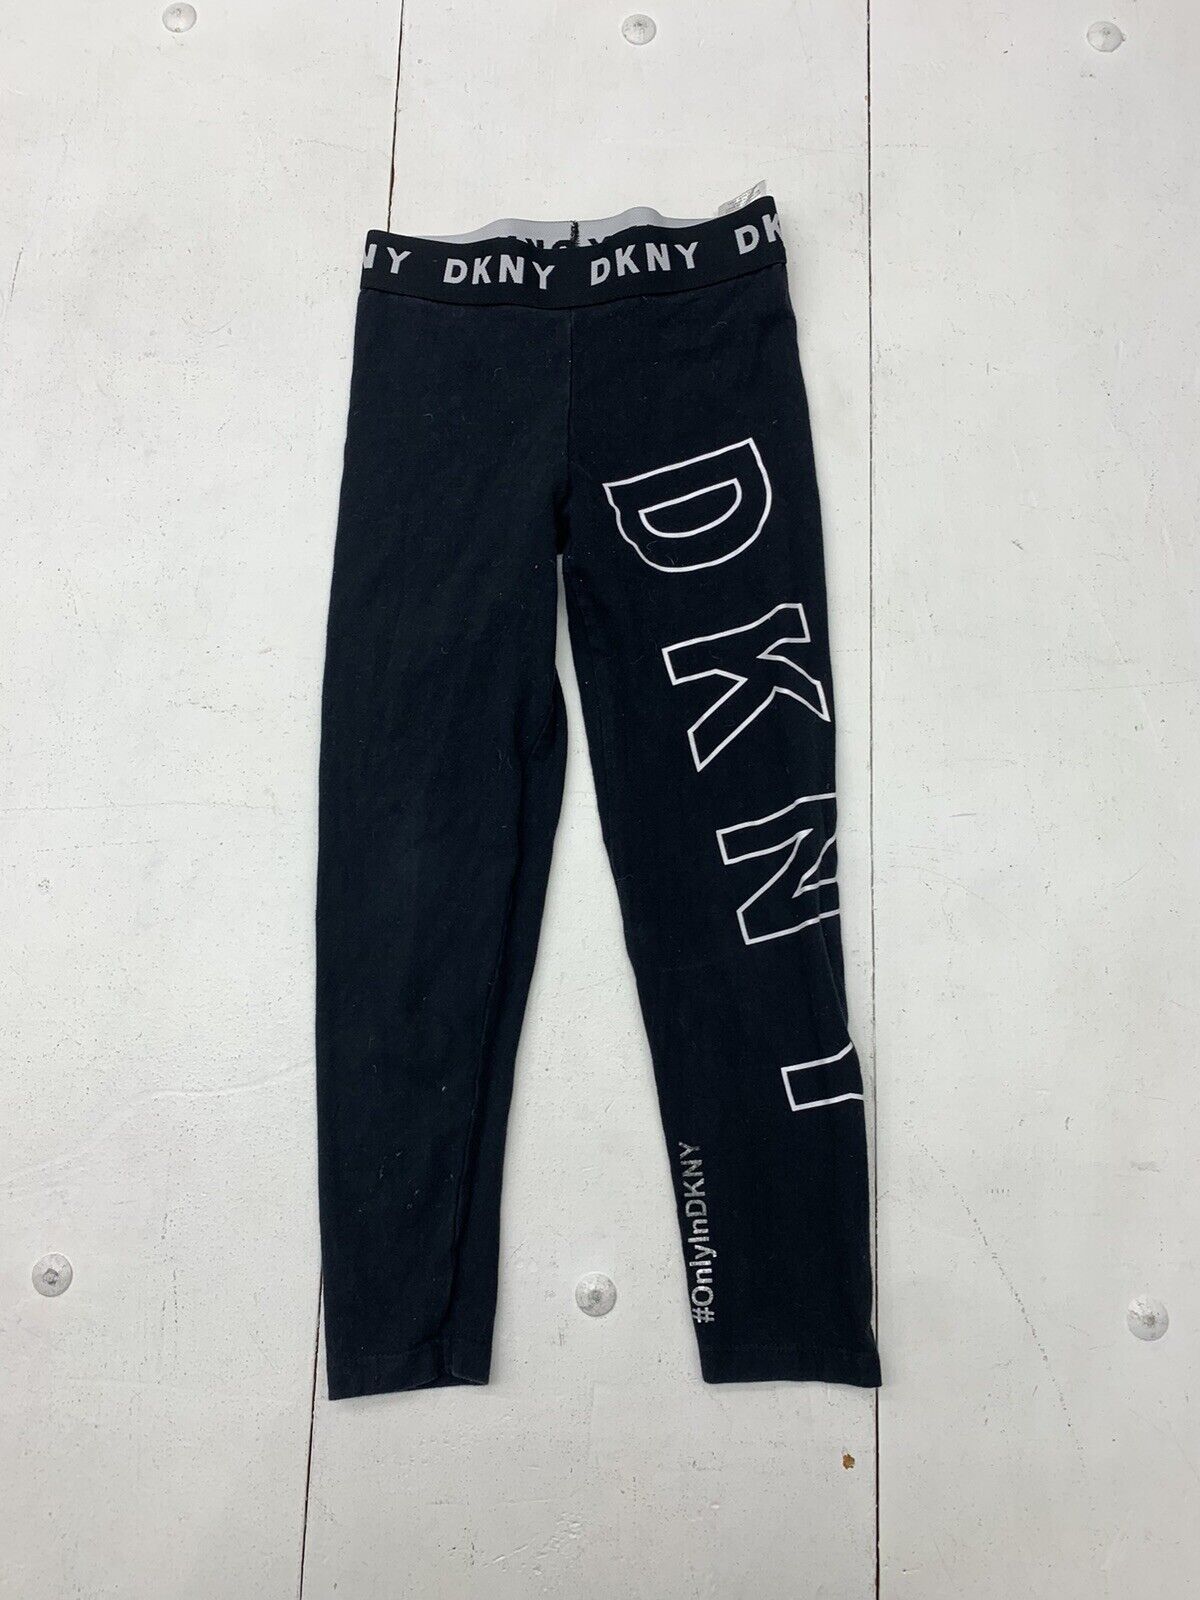 DKNY leggings grey for girls